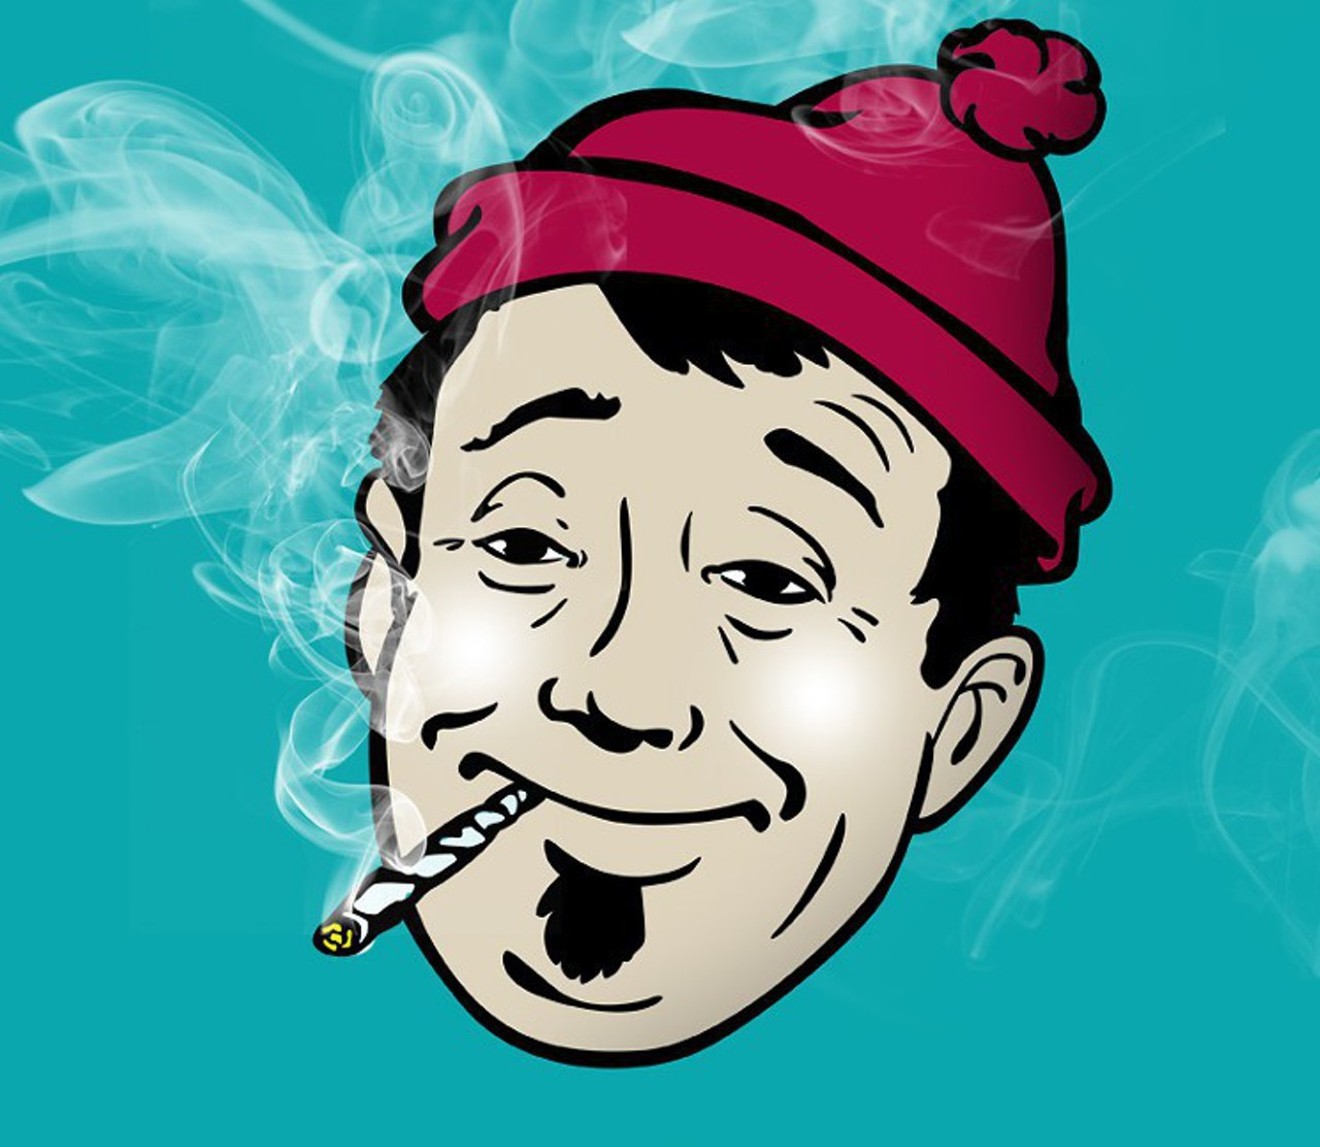 Cartoon stoner smokes a joint